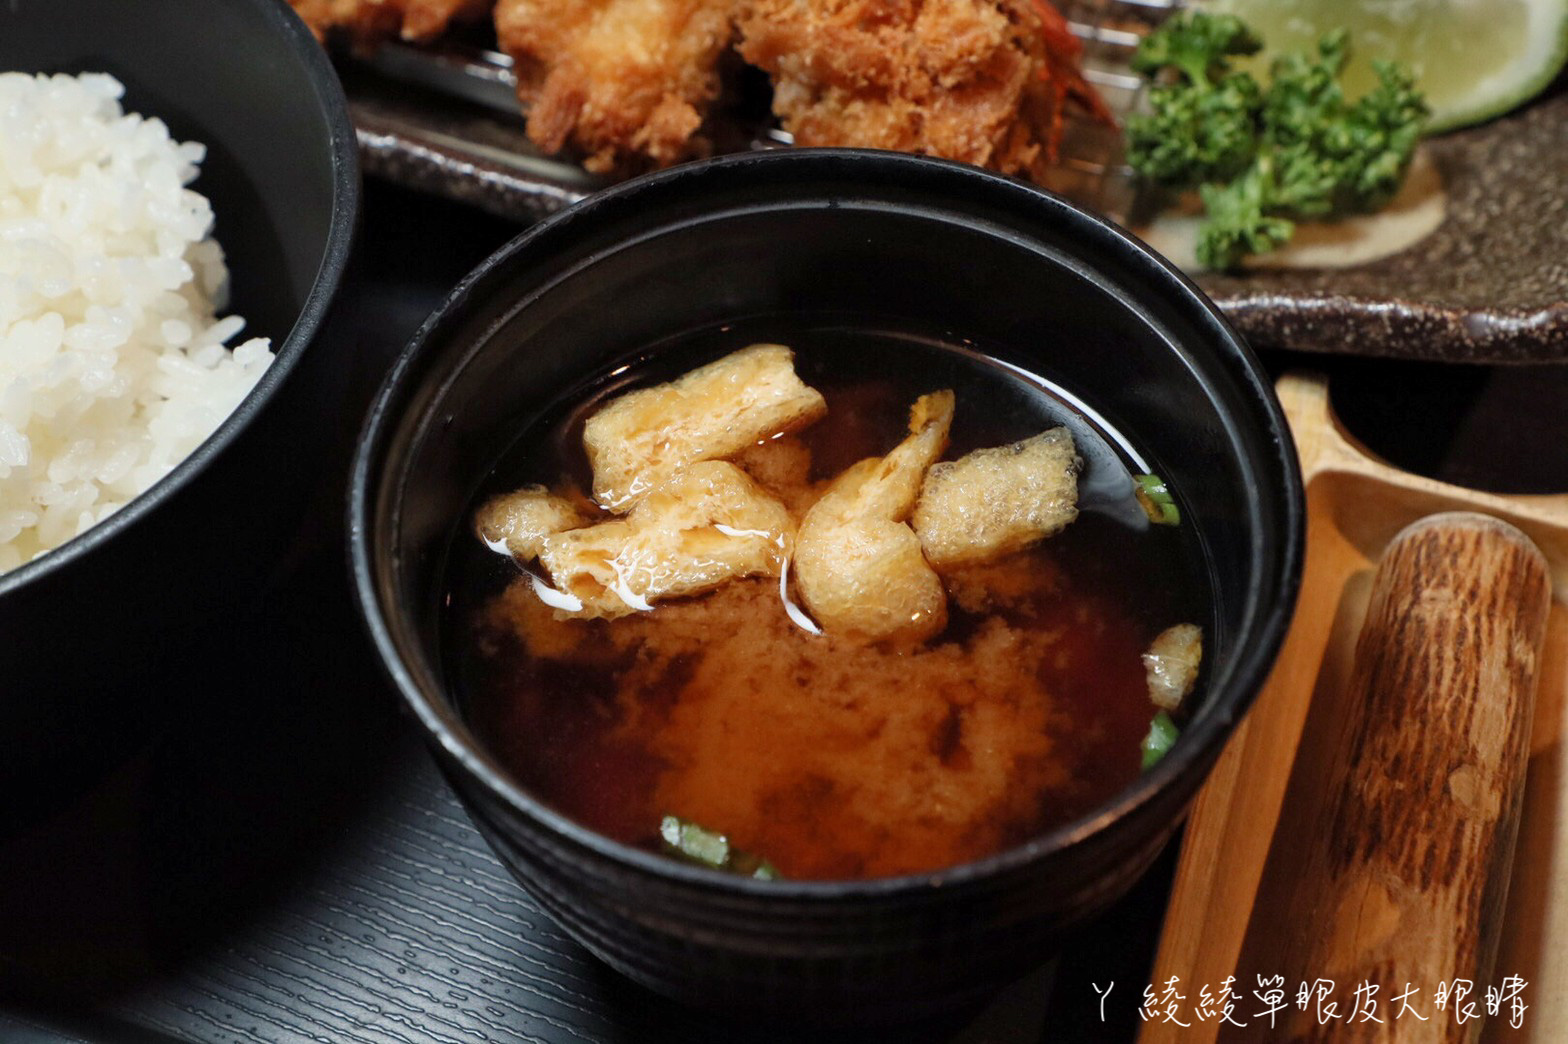 新竹火車站附近美食！主打厚實的日式炸豬排定食，必吃期間限定肥美多汁的廣島牡蠣